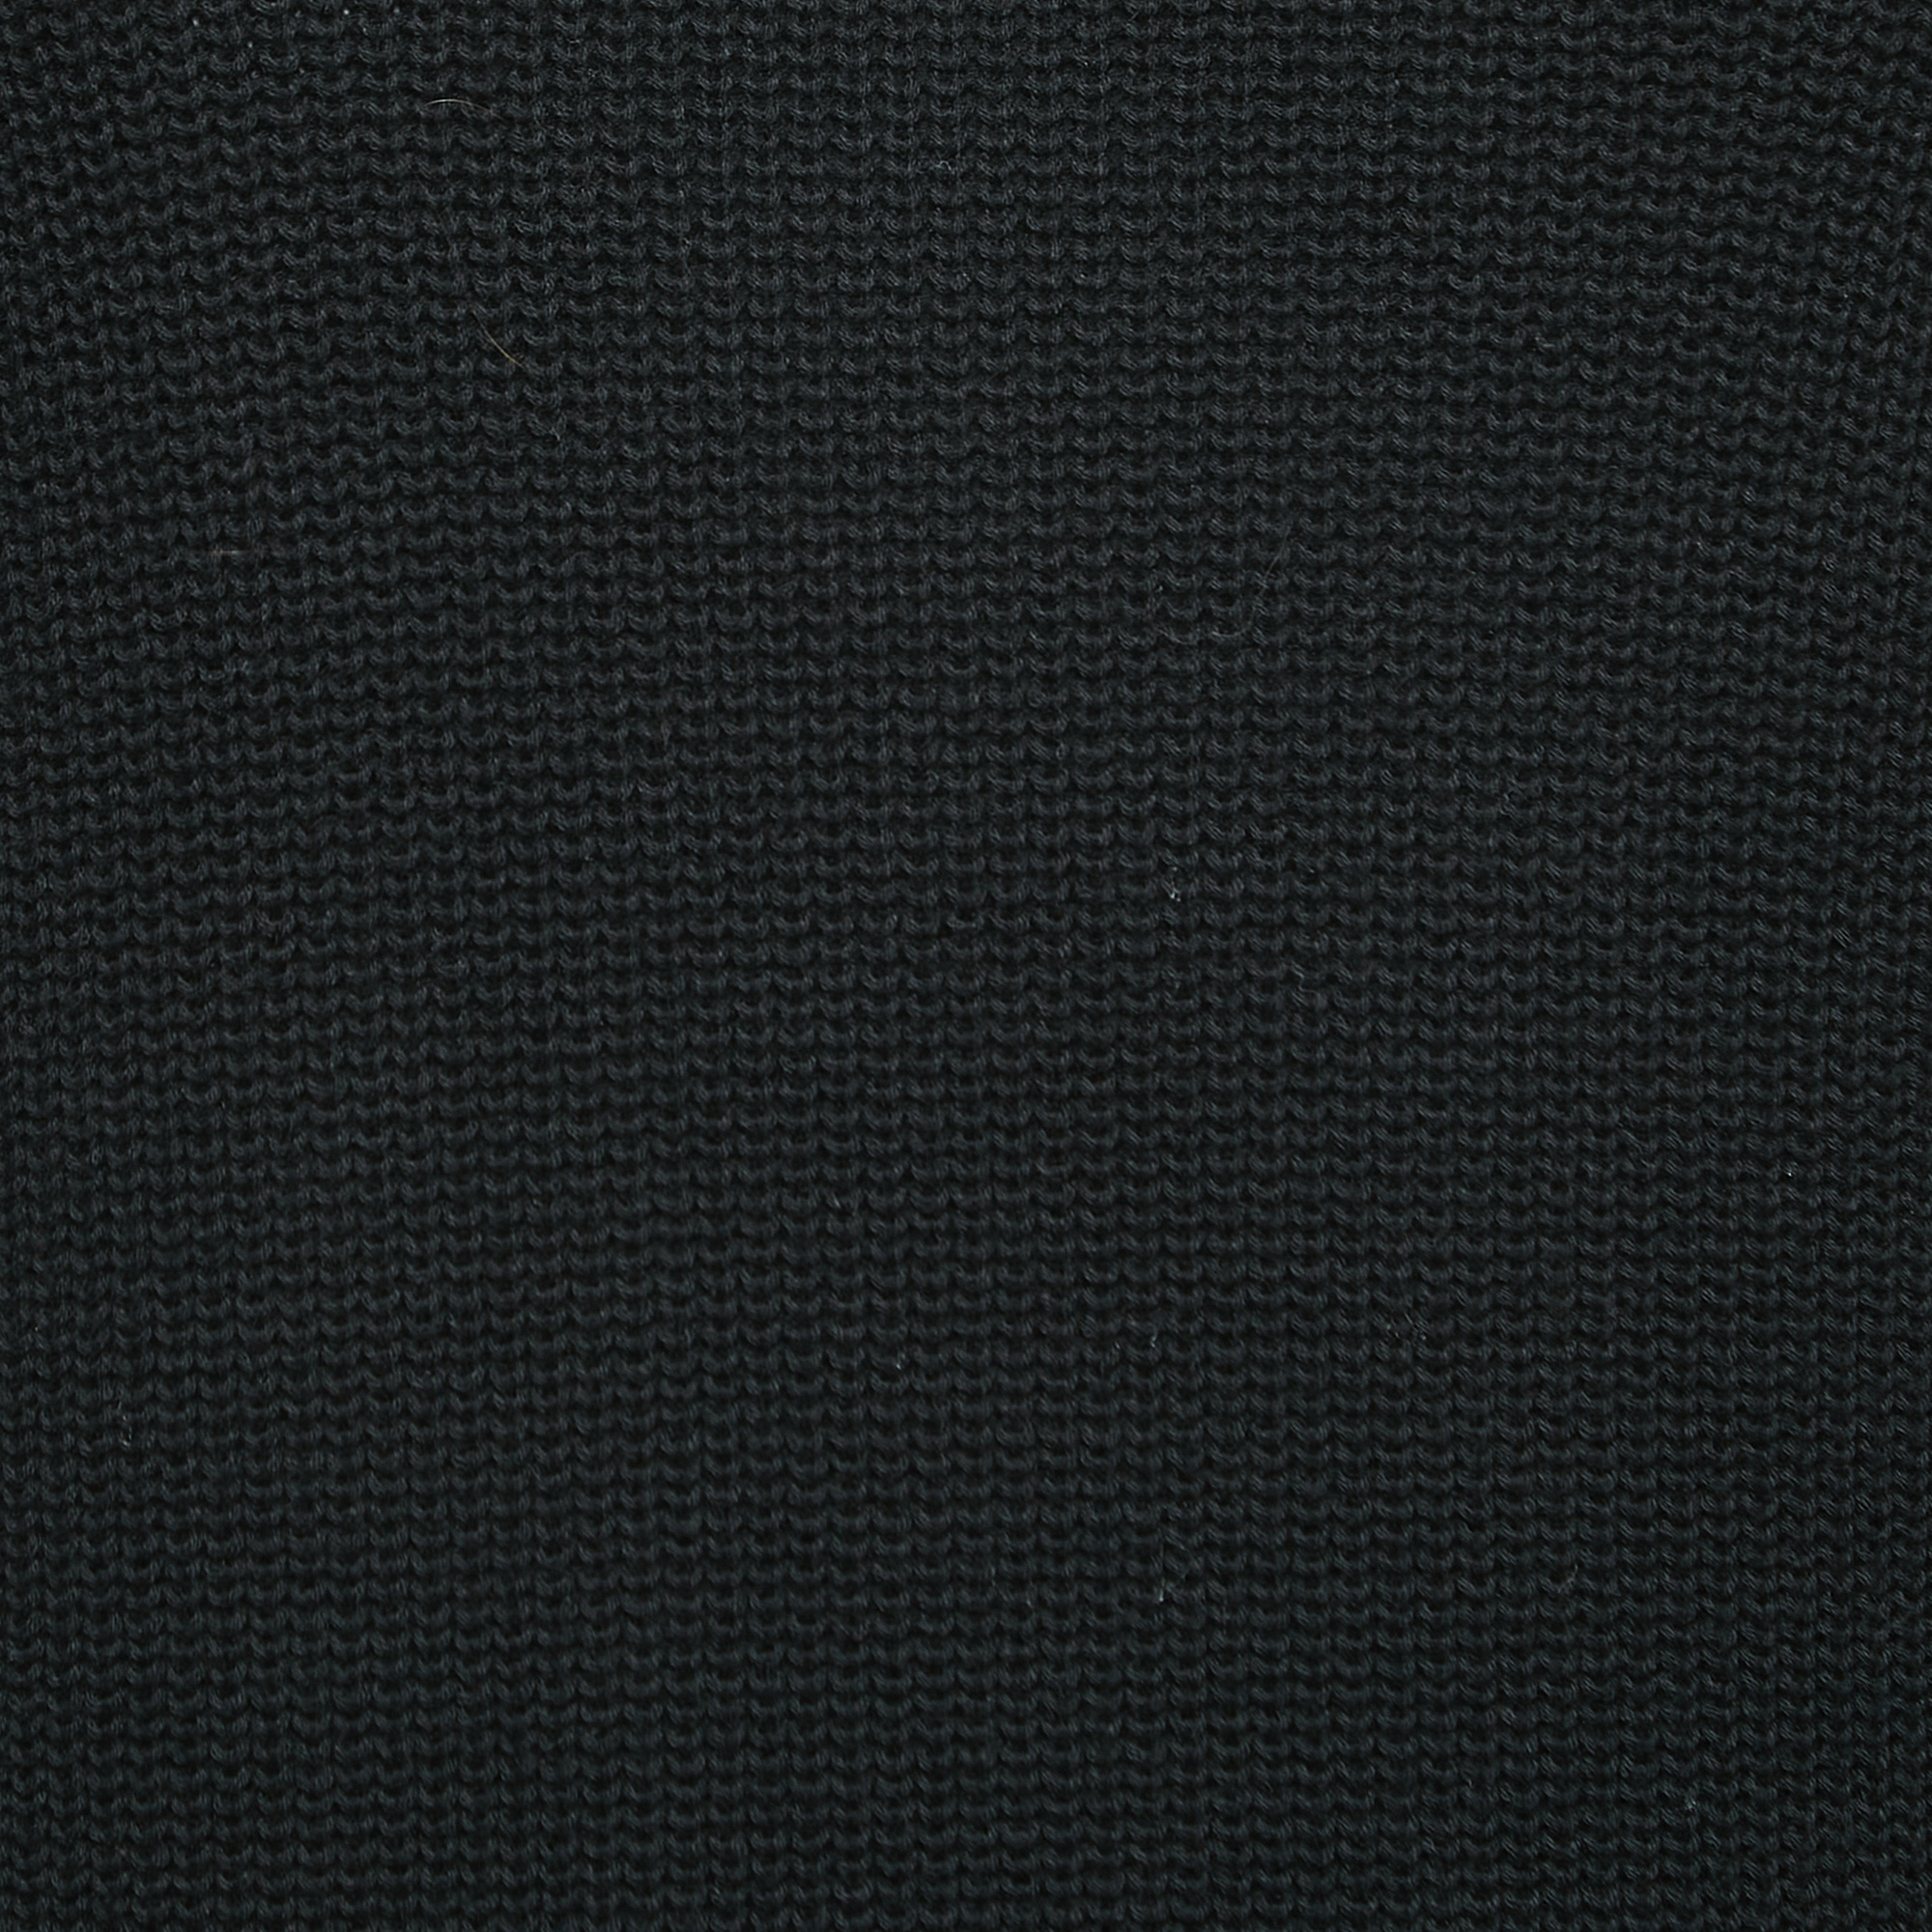 Diane Von Furstenberg Black Knit Logo Detail Sleeve Midi Dress M